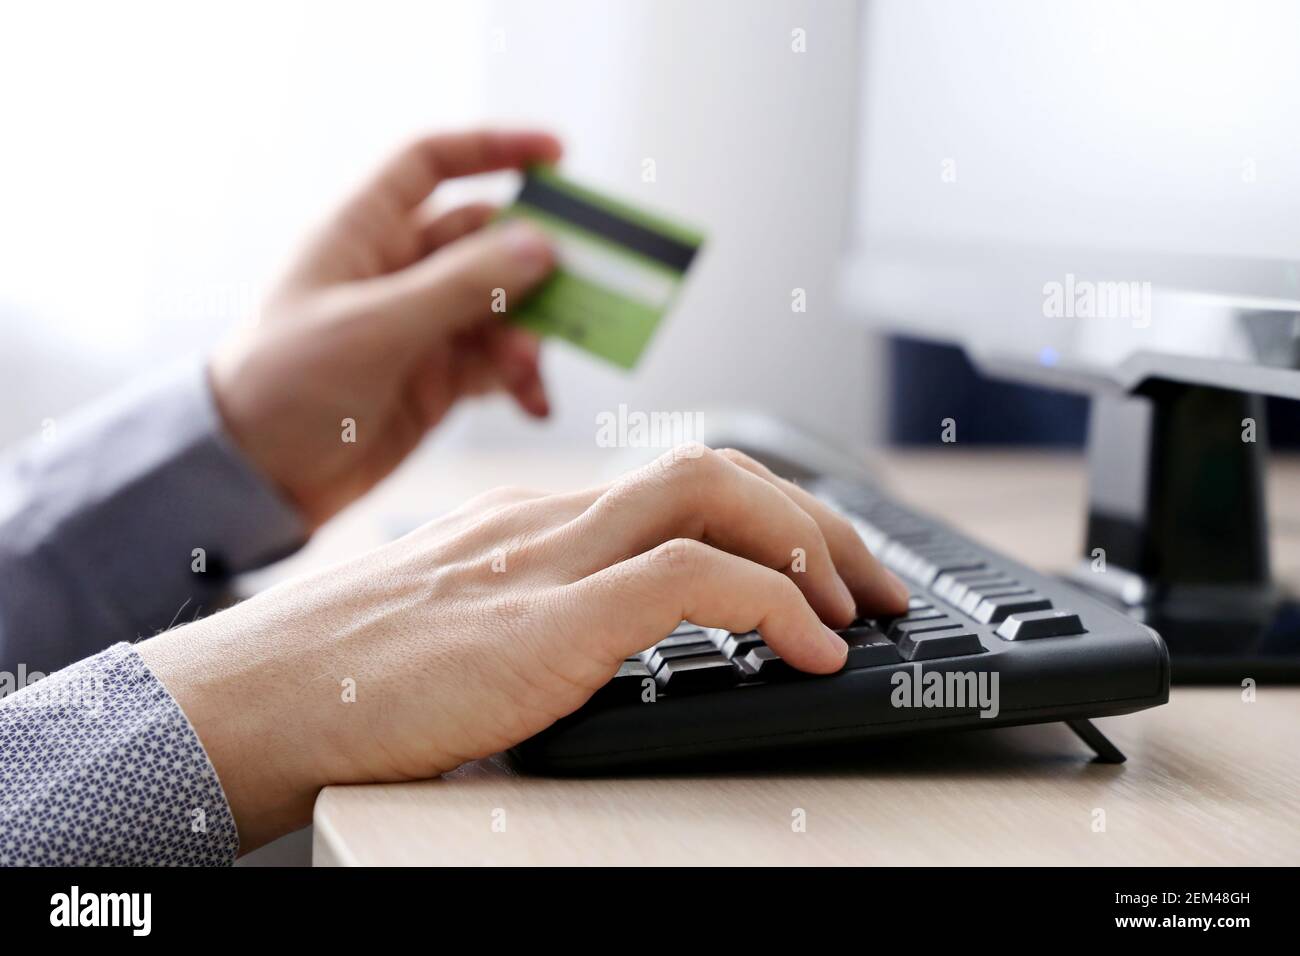 Homme tenant les types de carte de crédit de banque sur le clavier de PC. Concept d'achat et de paiement en ligne, transactions financières Banque D'Images